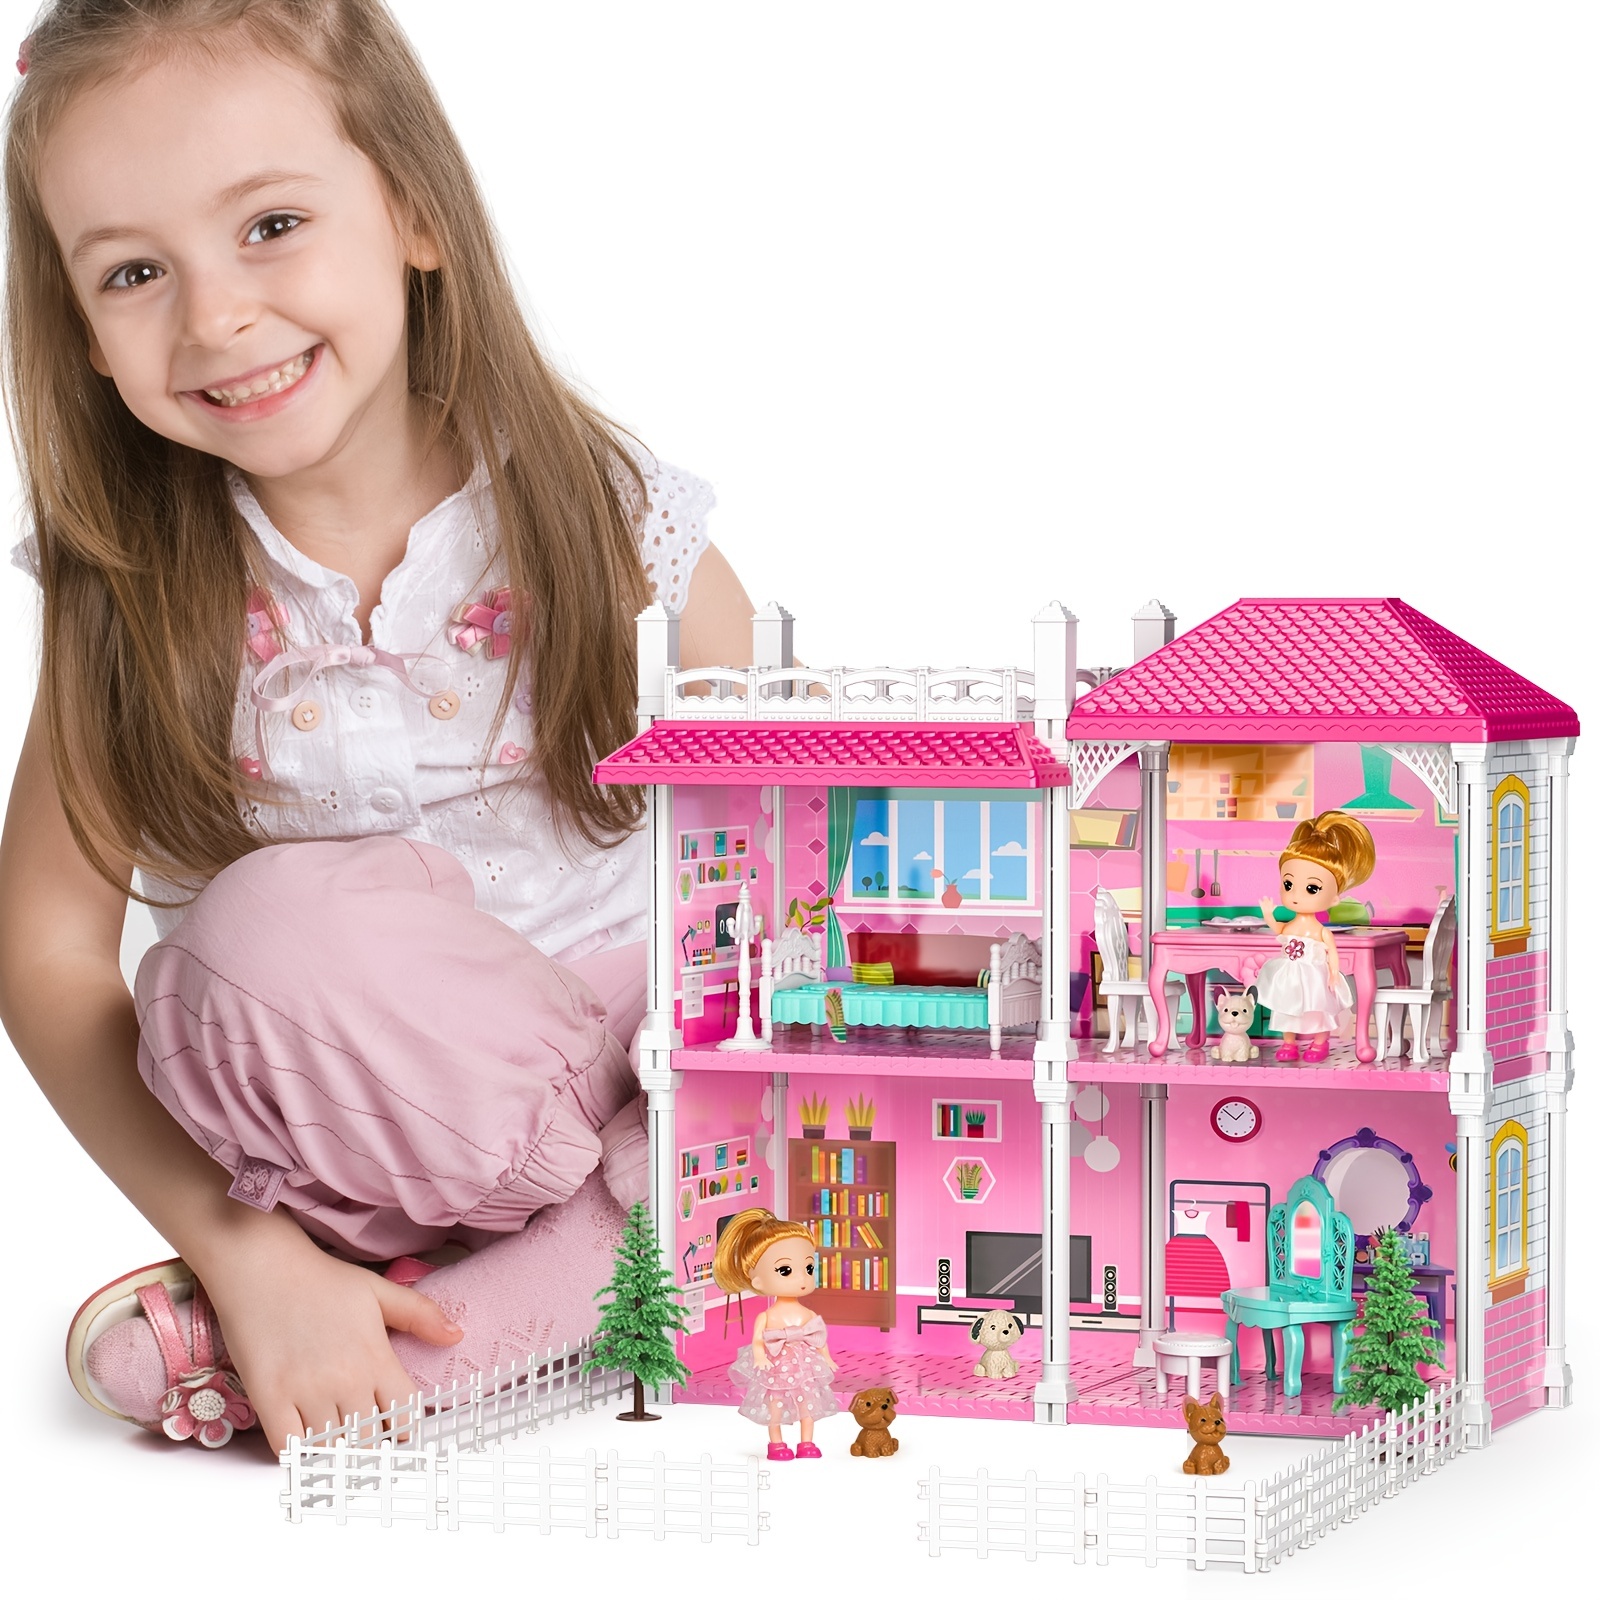 Tienda juegos casitas para niños niñas juguetes regalos 3,5,7,8 años 3pcs